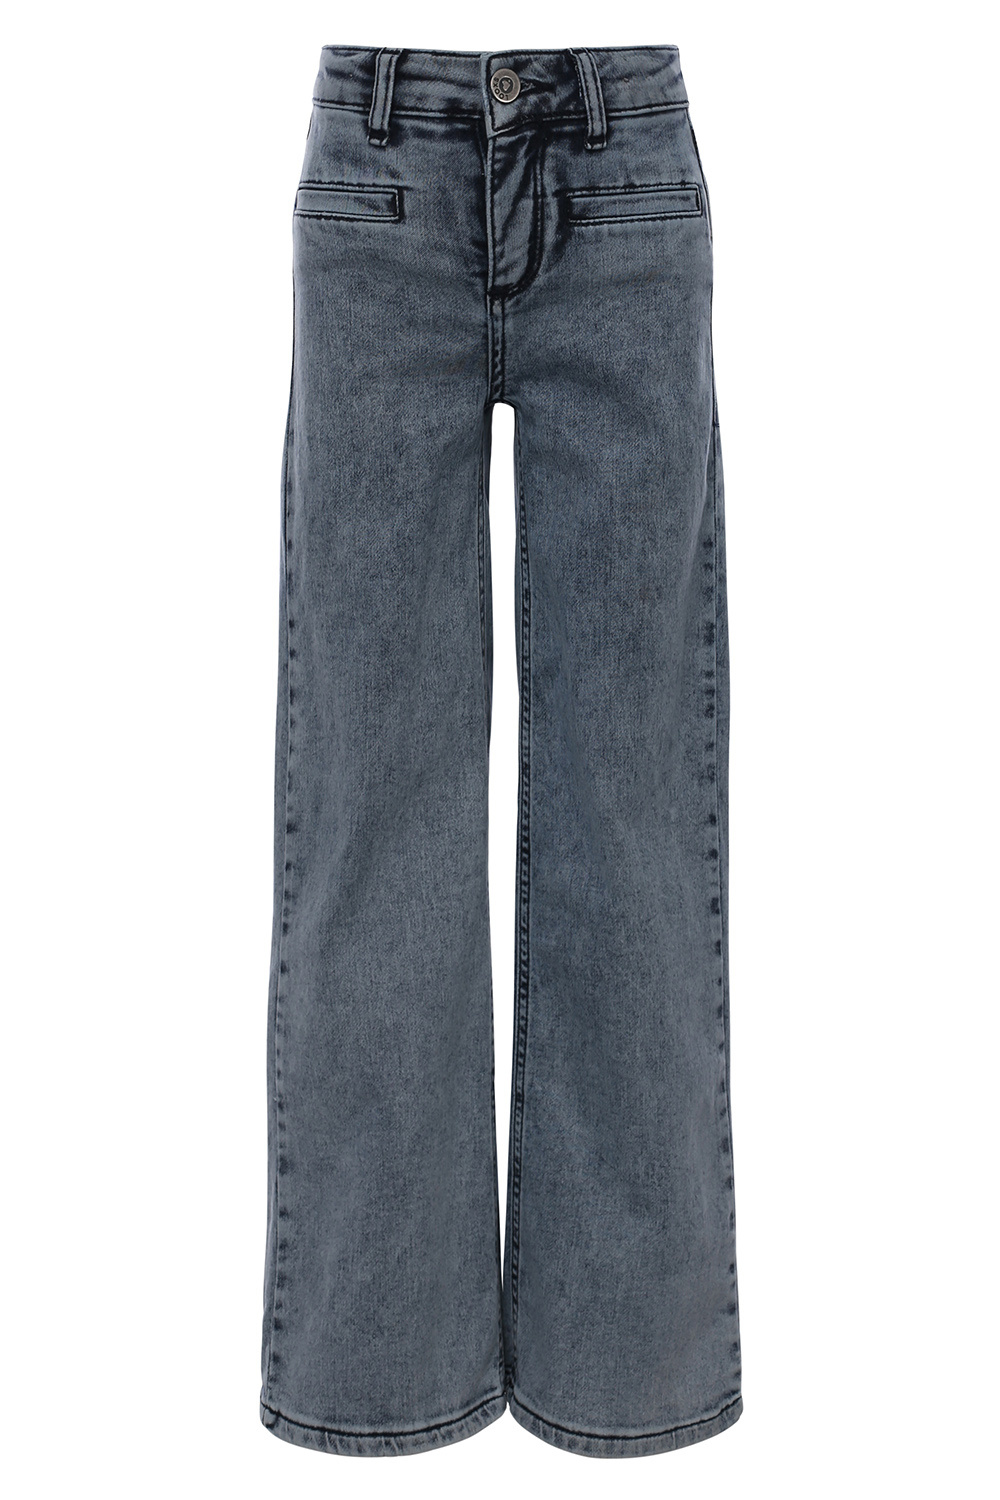 Looxs Revolution 2311-5624-165 Meisjes Broek - Maat 164 - Jeans Blauw van Katoen